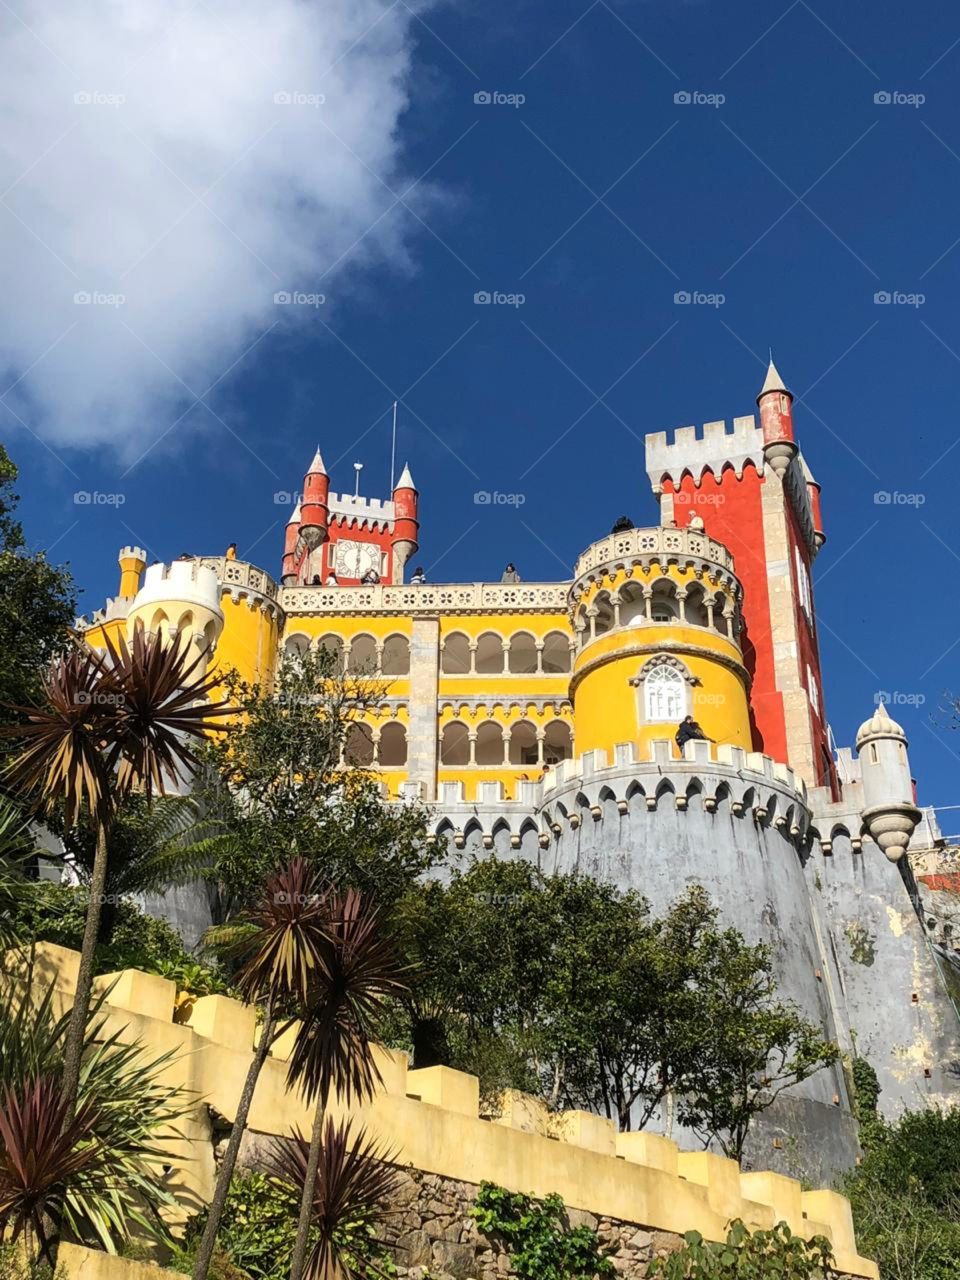 Palácio da Pena - Sintra